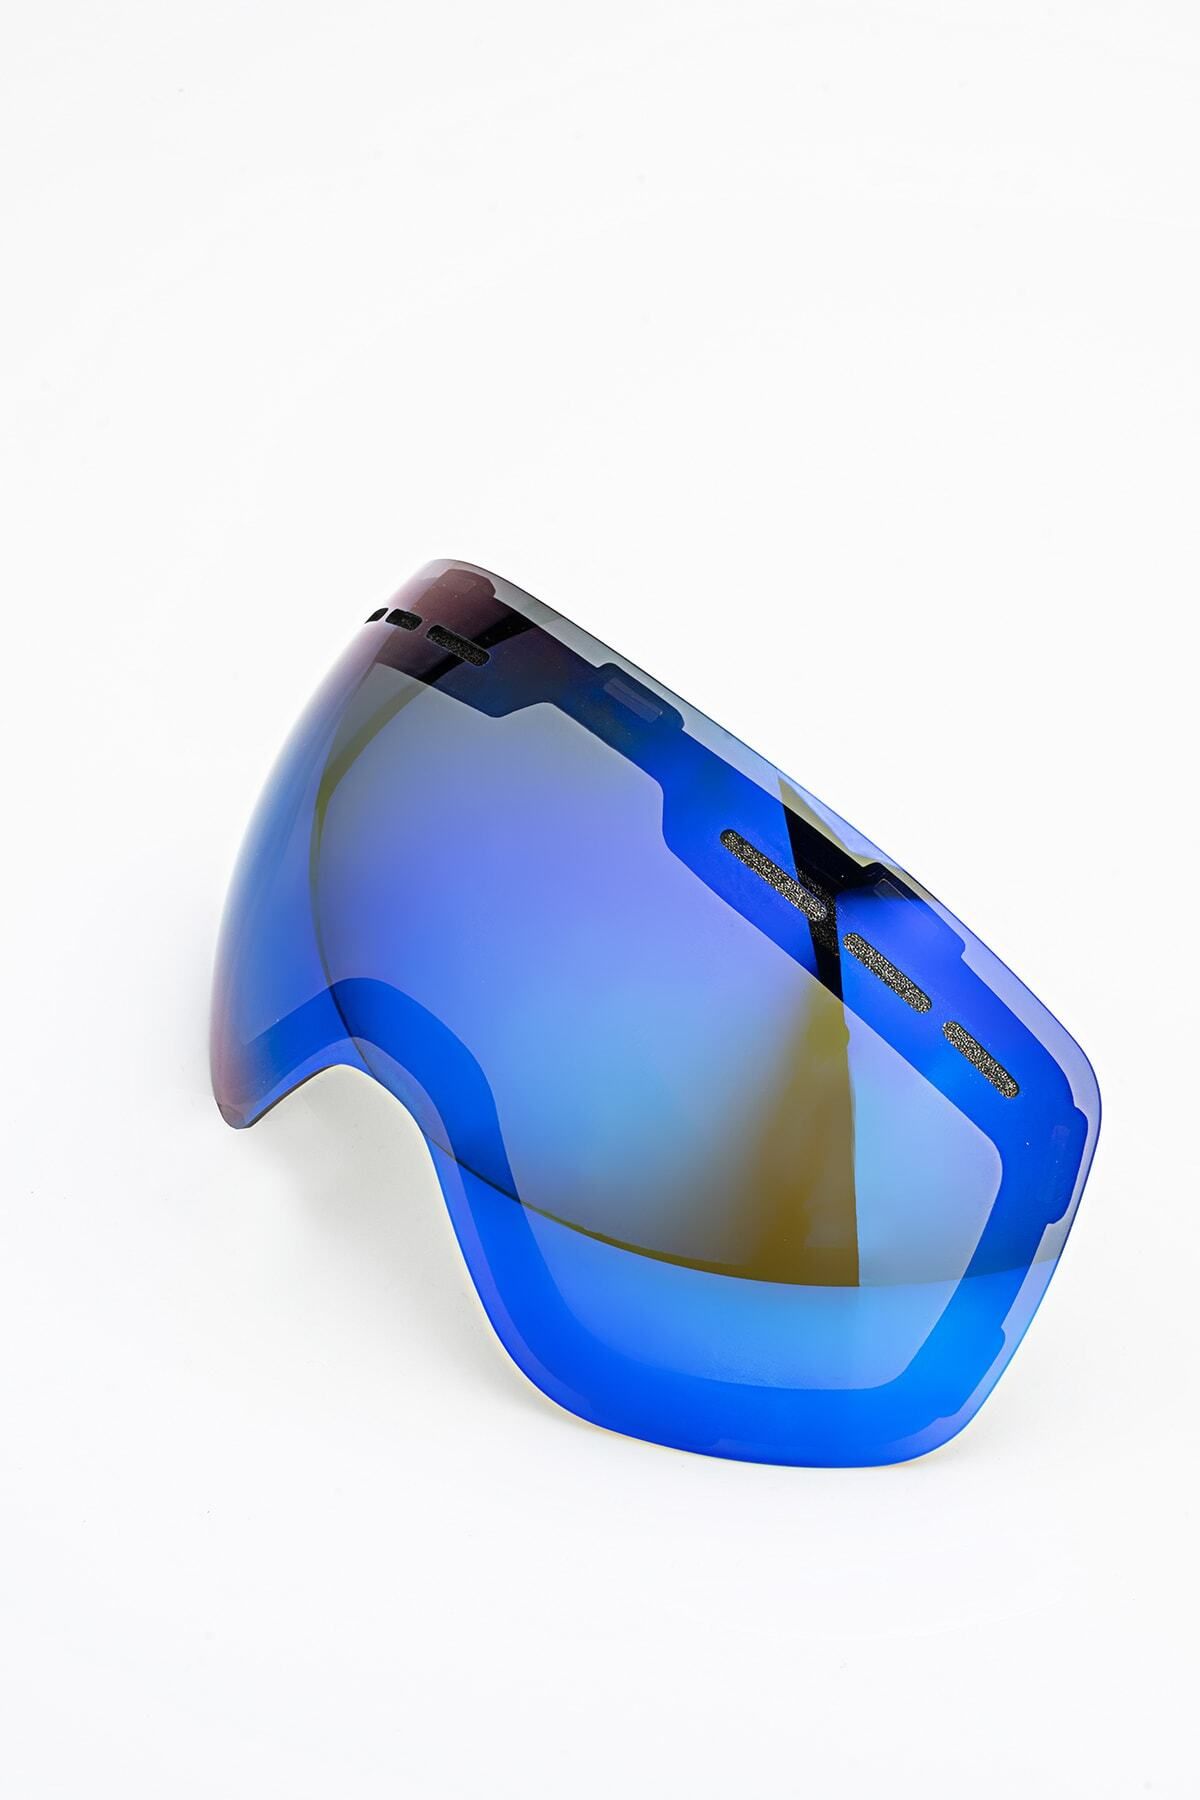 YABA Tek Lens - Manyetik Kayak & Snowboard Lensi - Yaba Marka Gözlük Ile Uyumlu